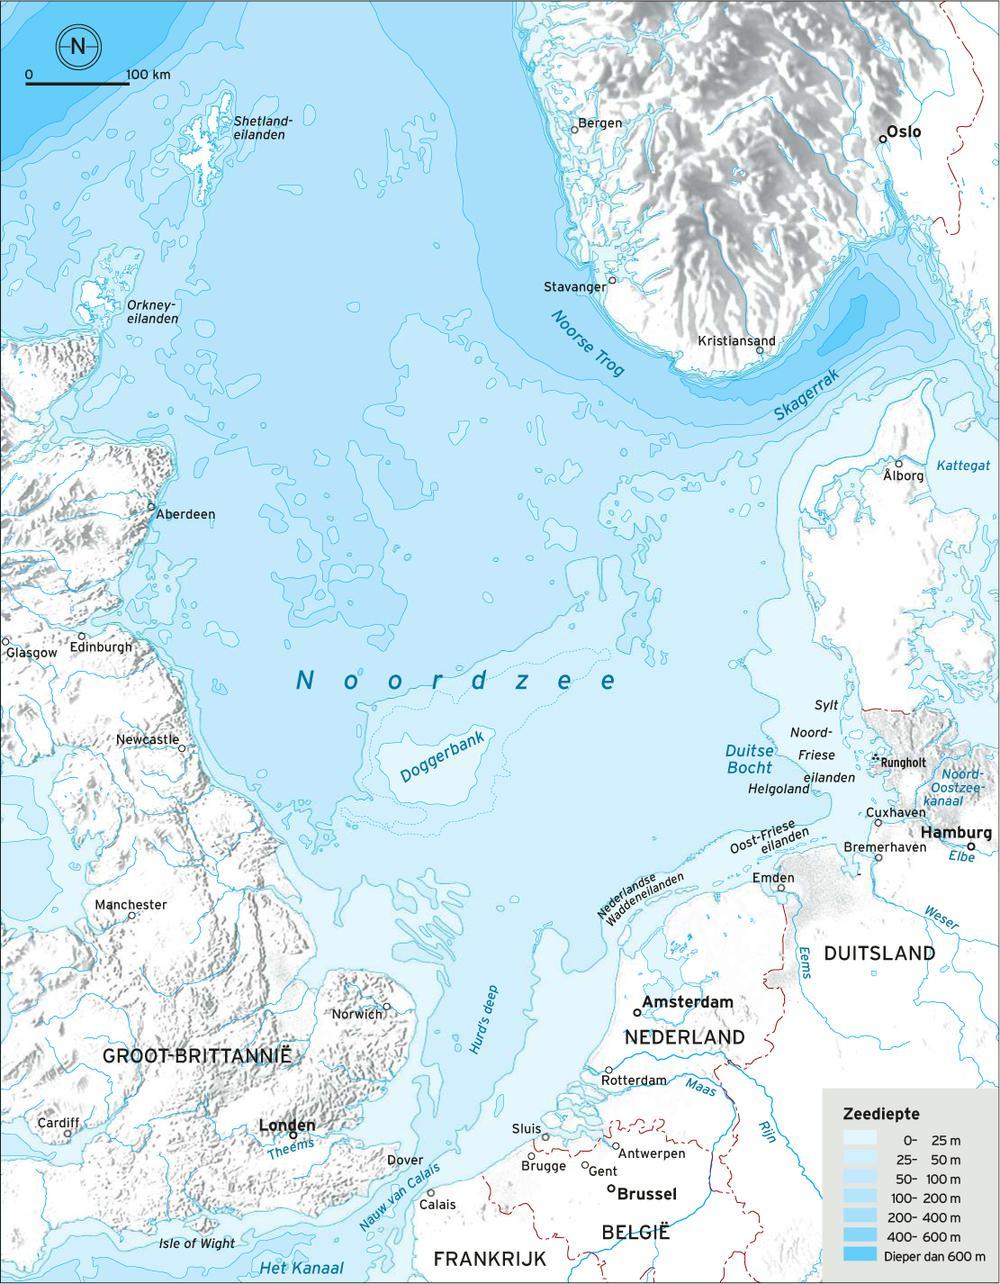 Topografie van een jonge zee: de Noordzee ontstond pas na de laatste IJstijd.